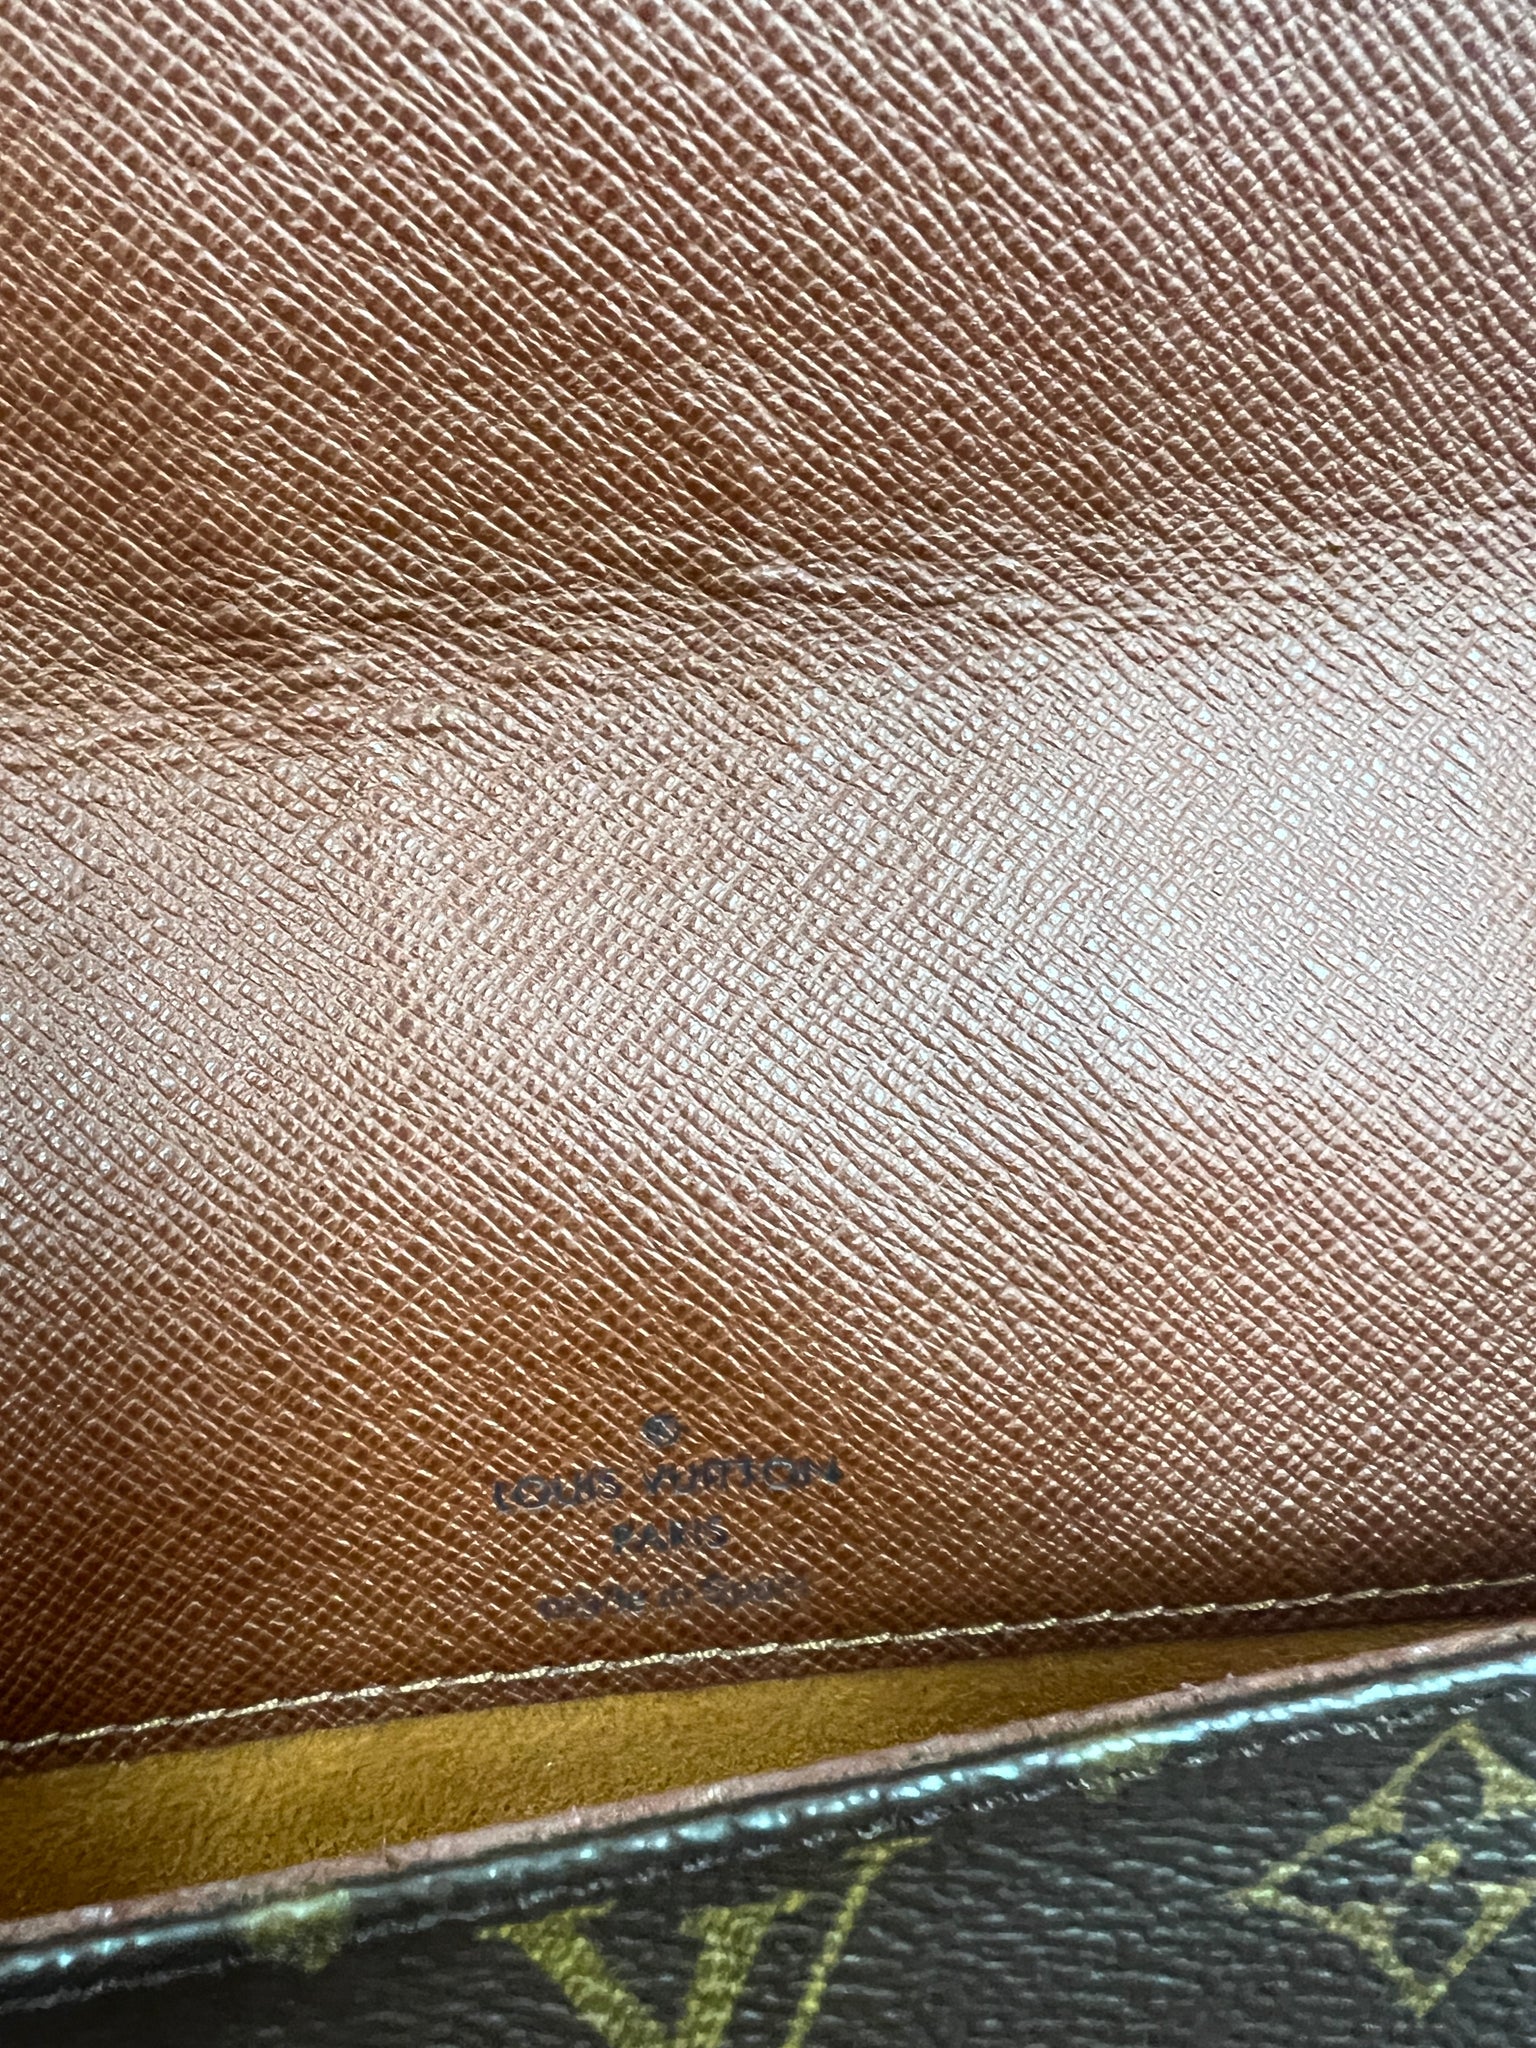 Authentic Louis Vuitton Musette Tango Vintage Leather 